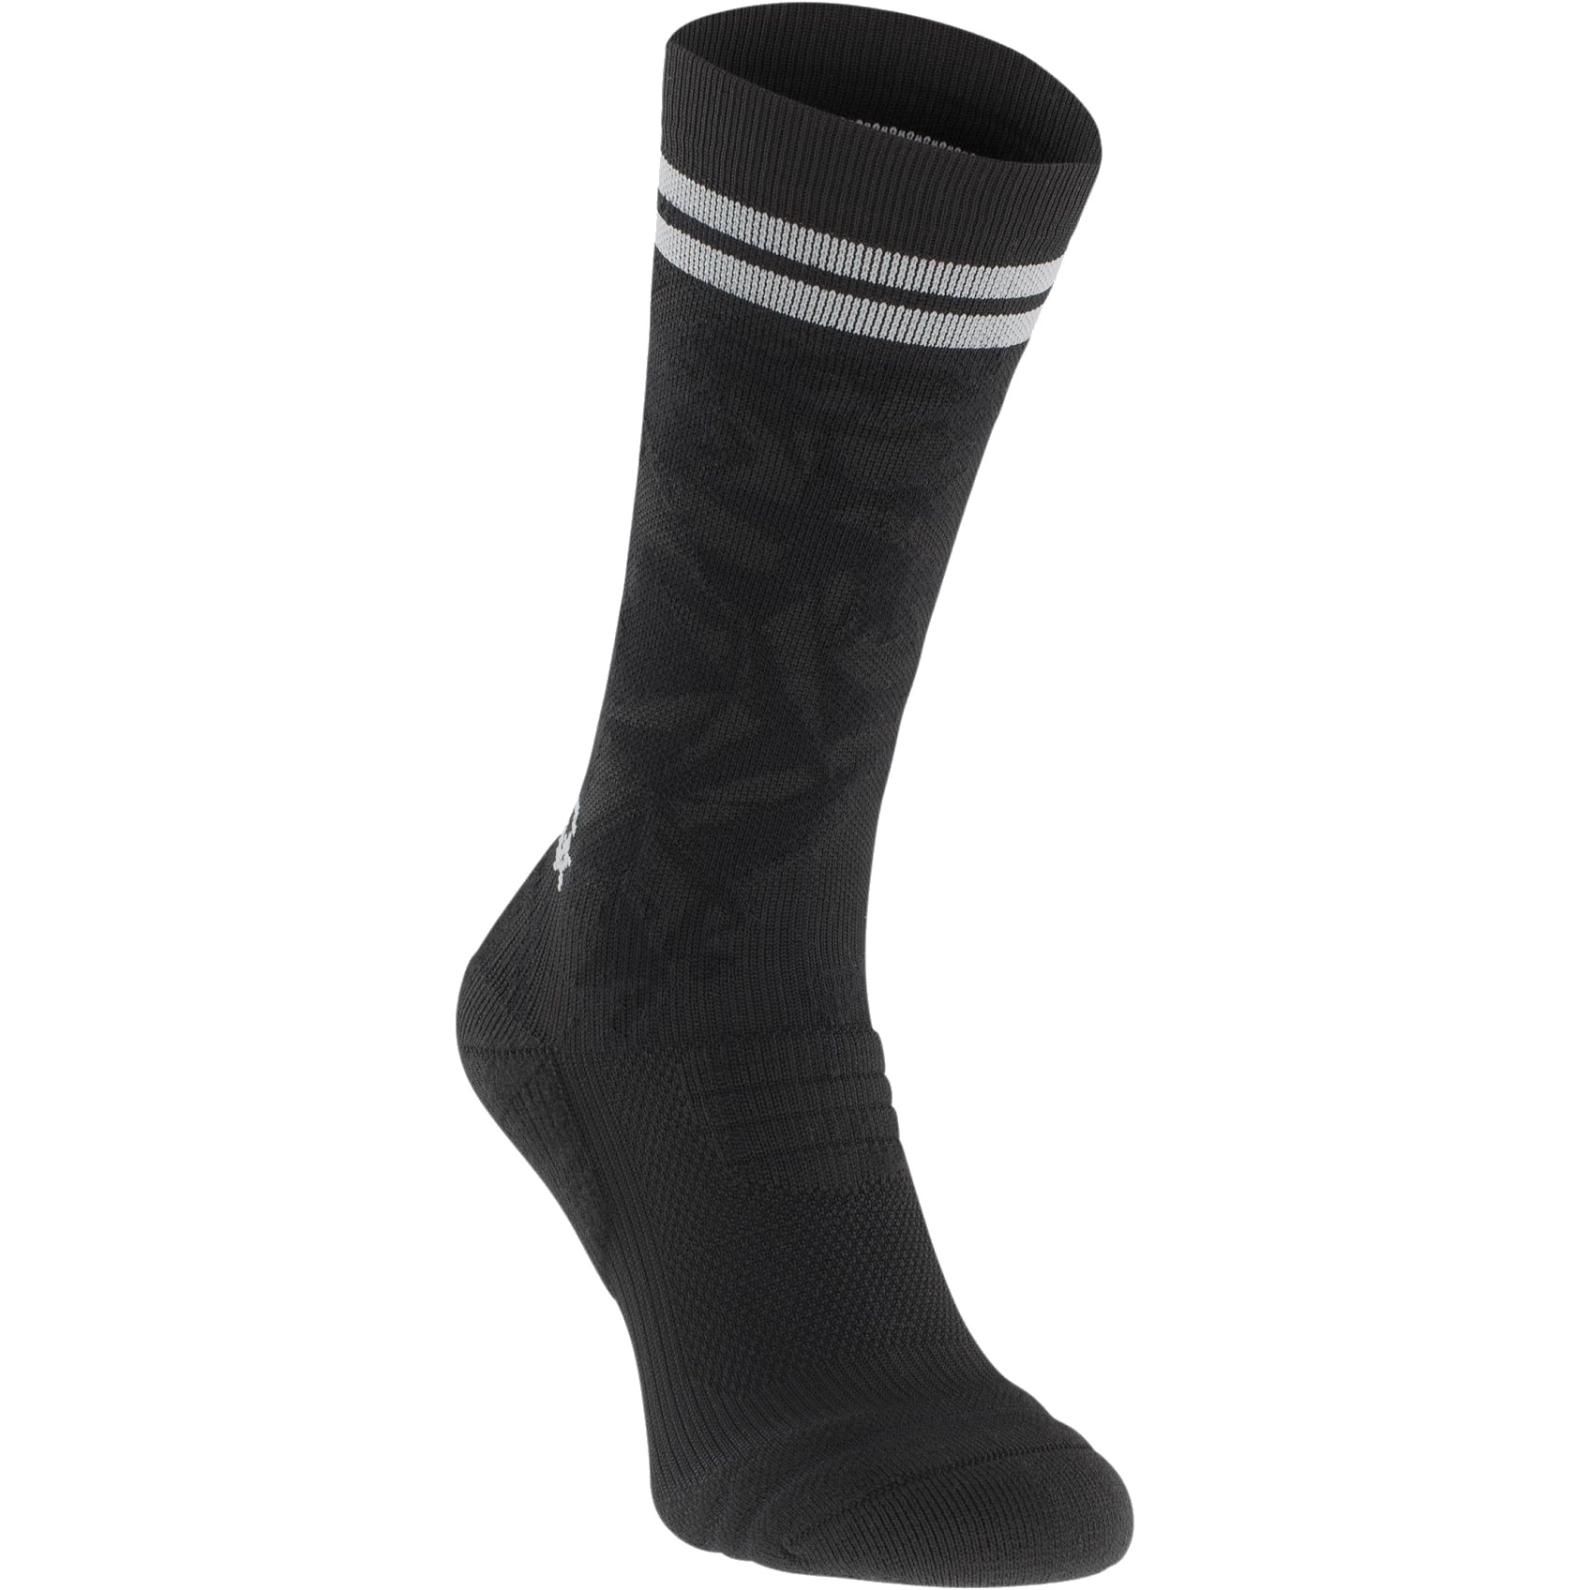 Image of EVOC Socks Medium - Black